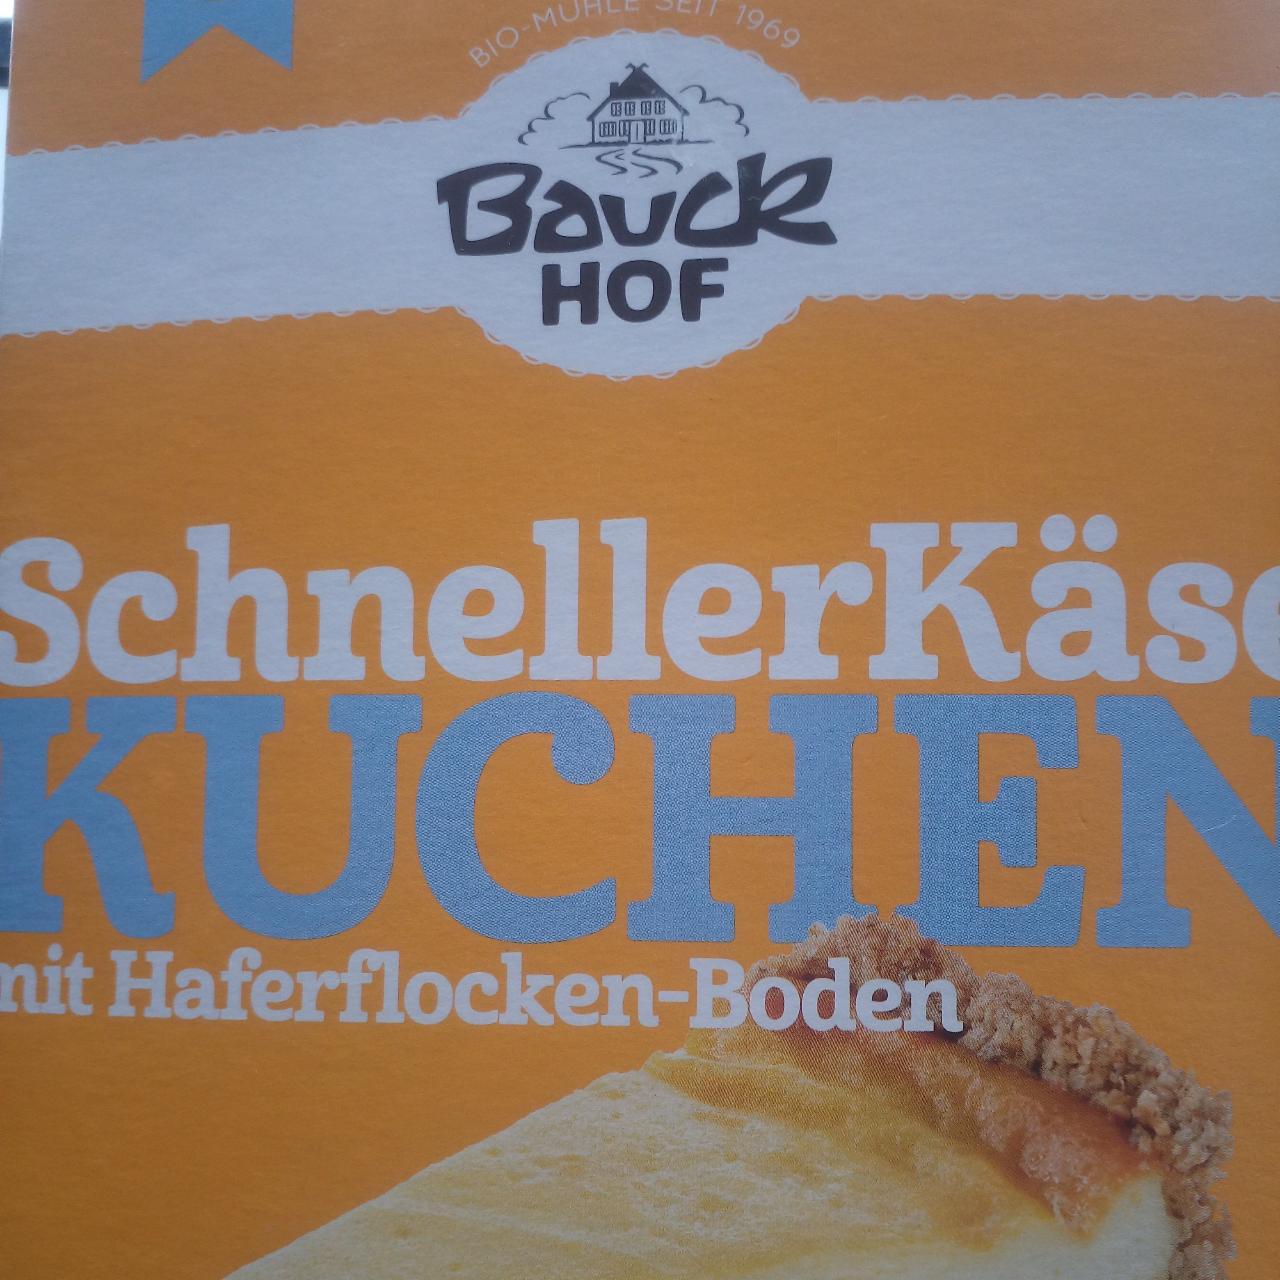 Fotografie - SchnellerKäse Kuchen glutenfrei Bauck Hof